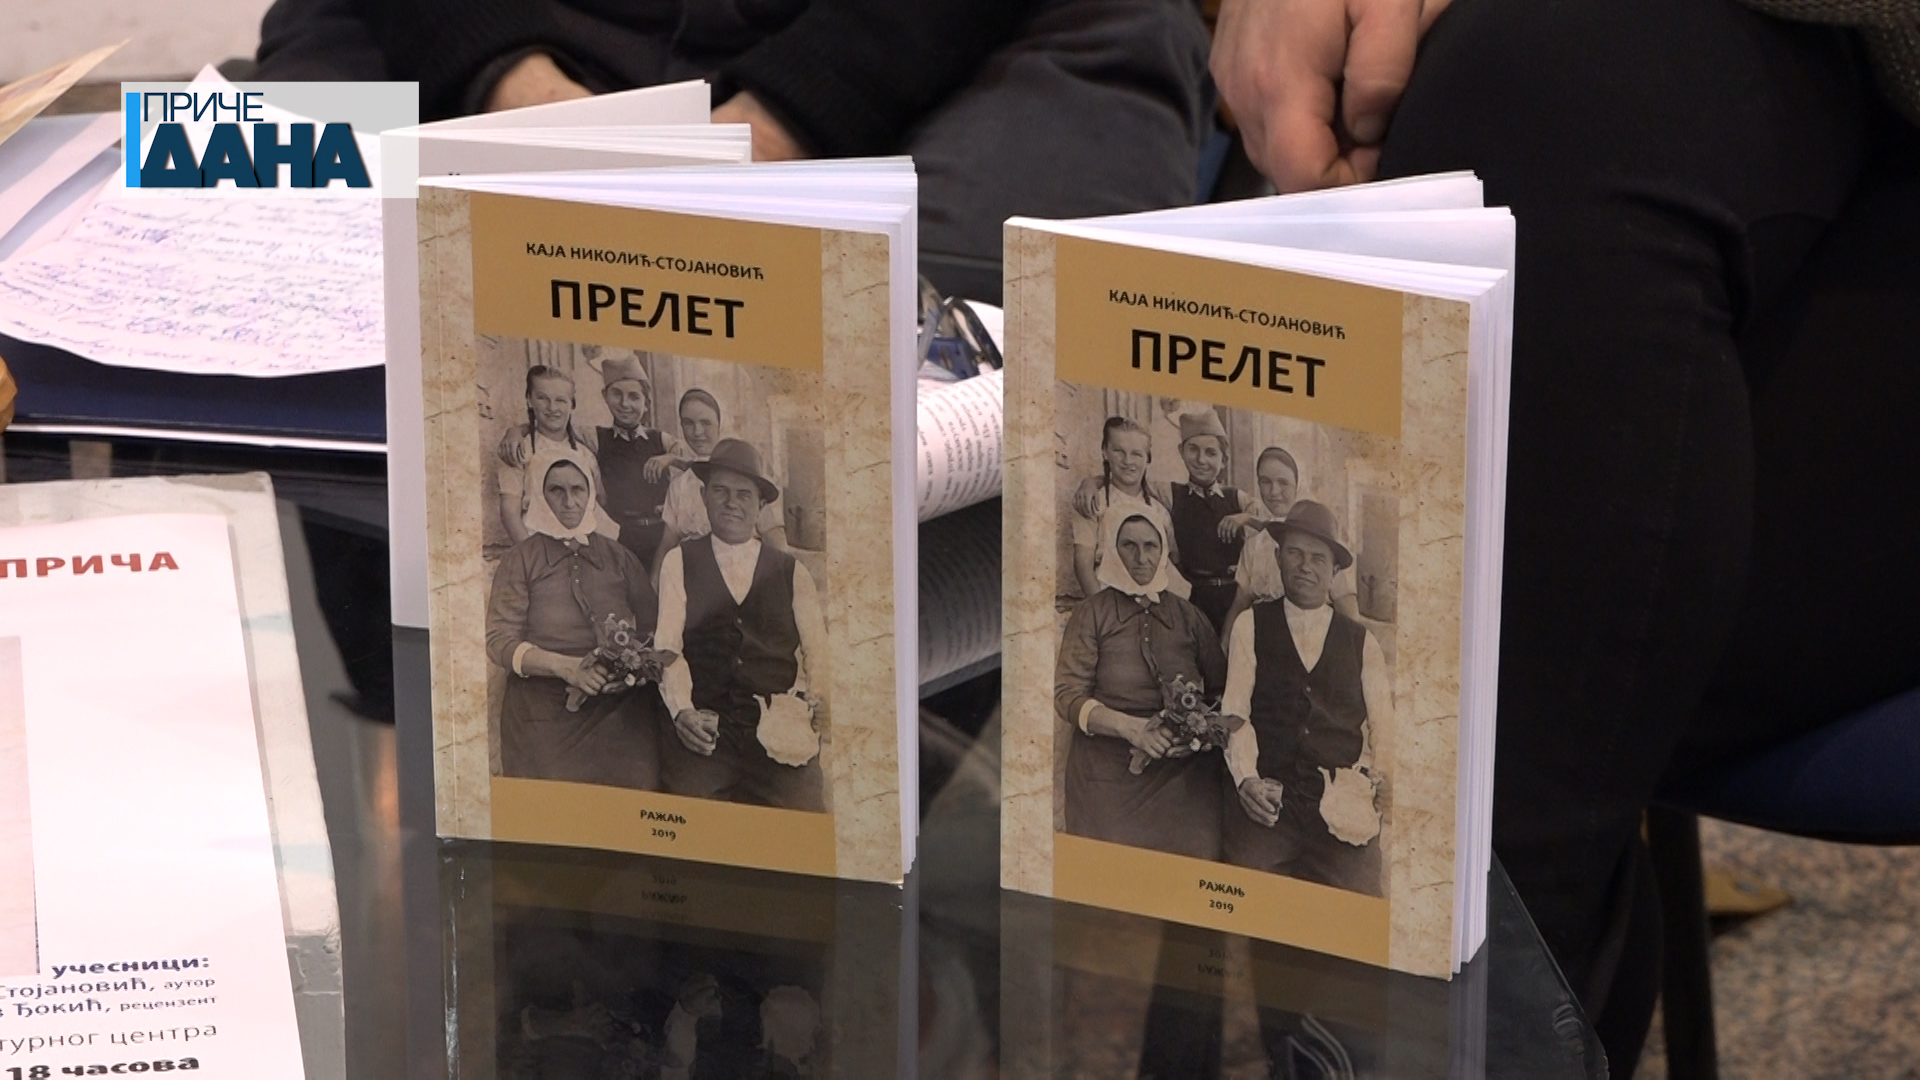 Predstavljanje knjige priča „Prelet“ Kaje Nikolić Stojanović